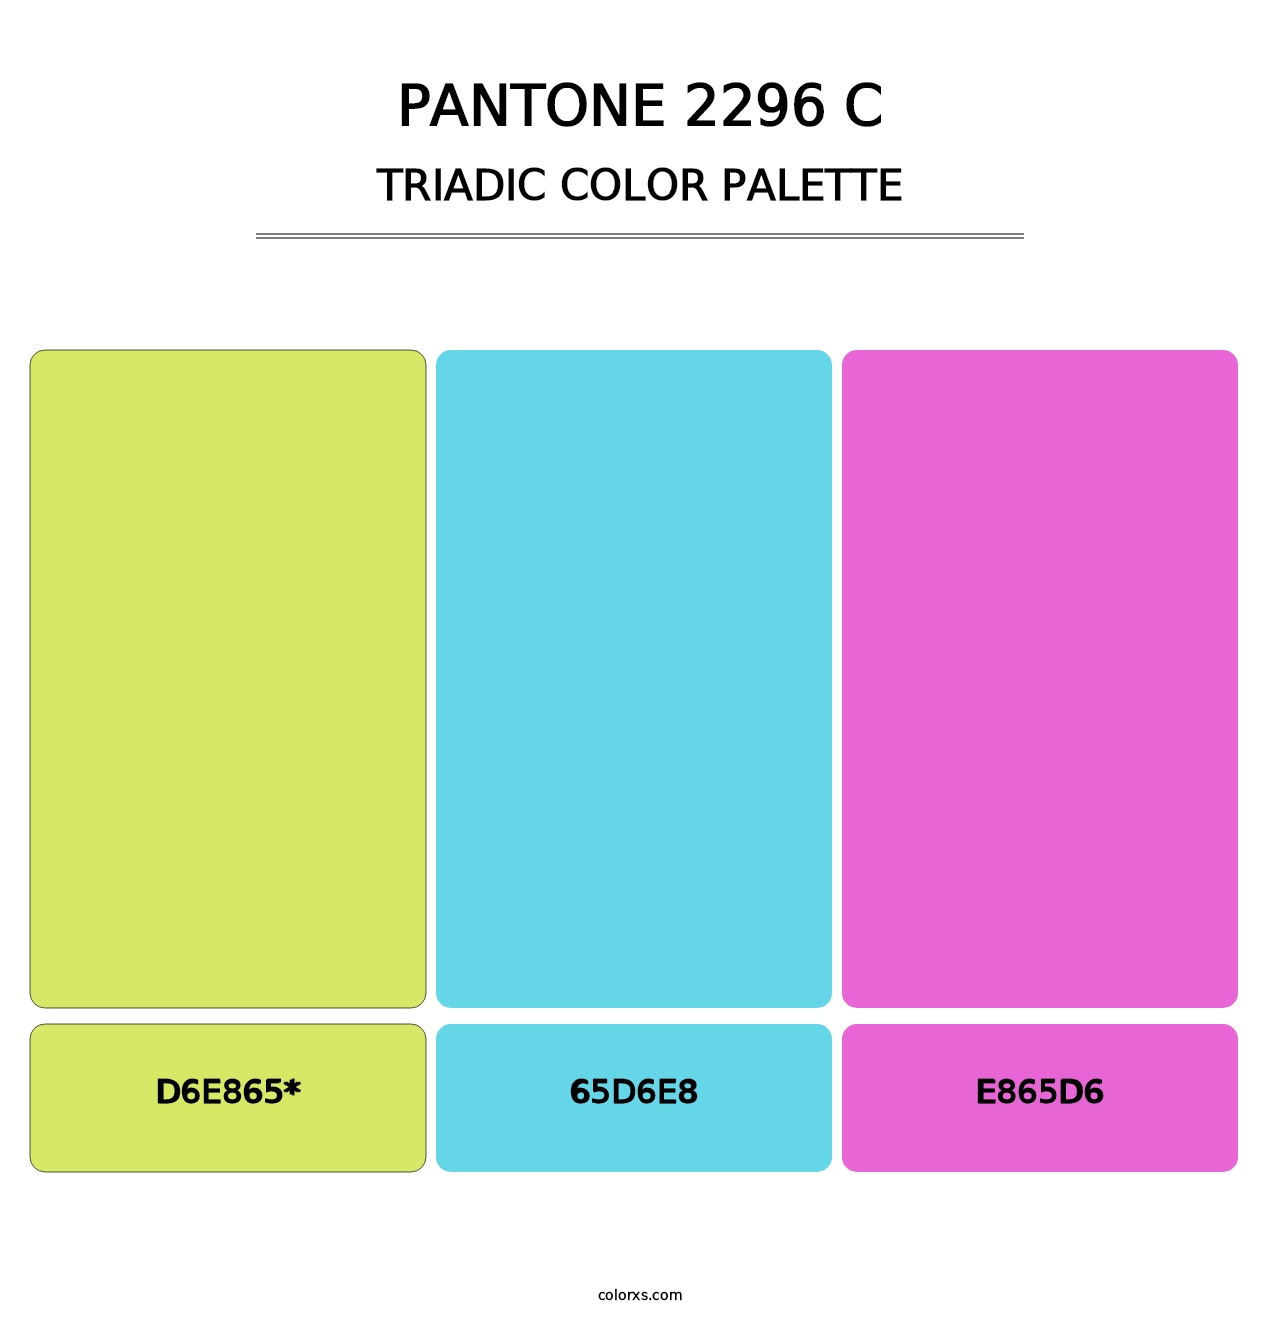 PANTONE 2296 C - Triadic Color Palette